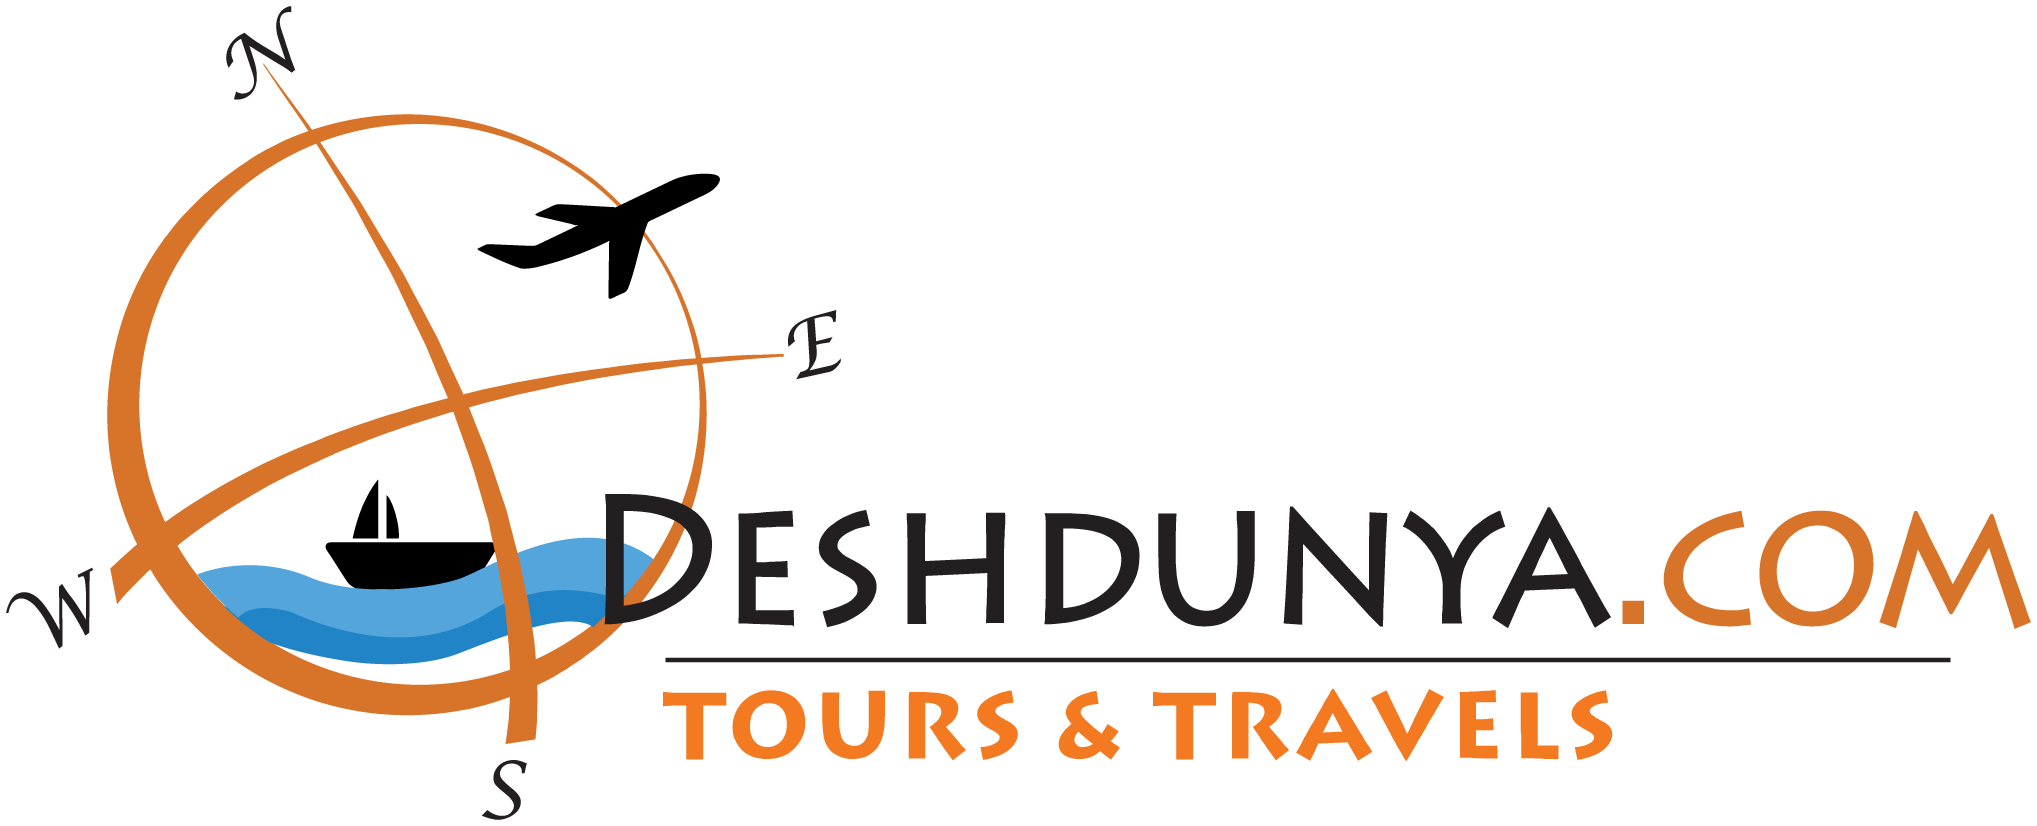 Deshdunya.com | Travel agent in Kolkata